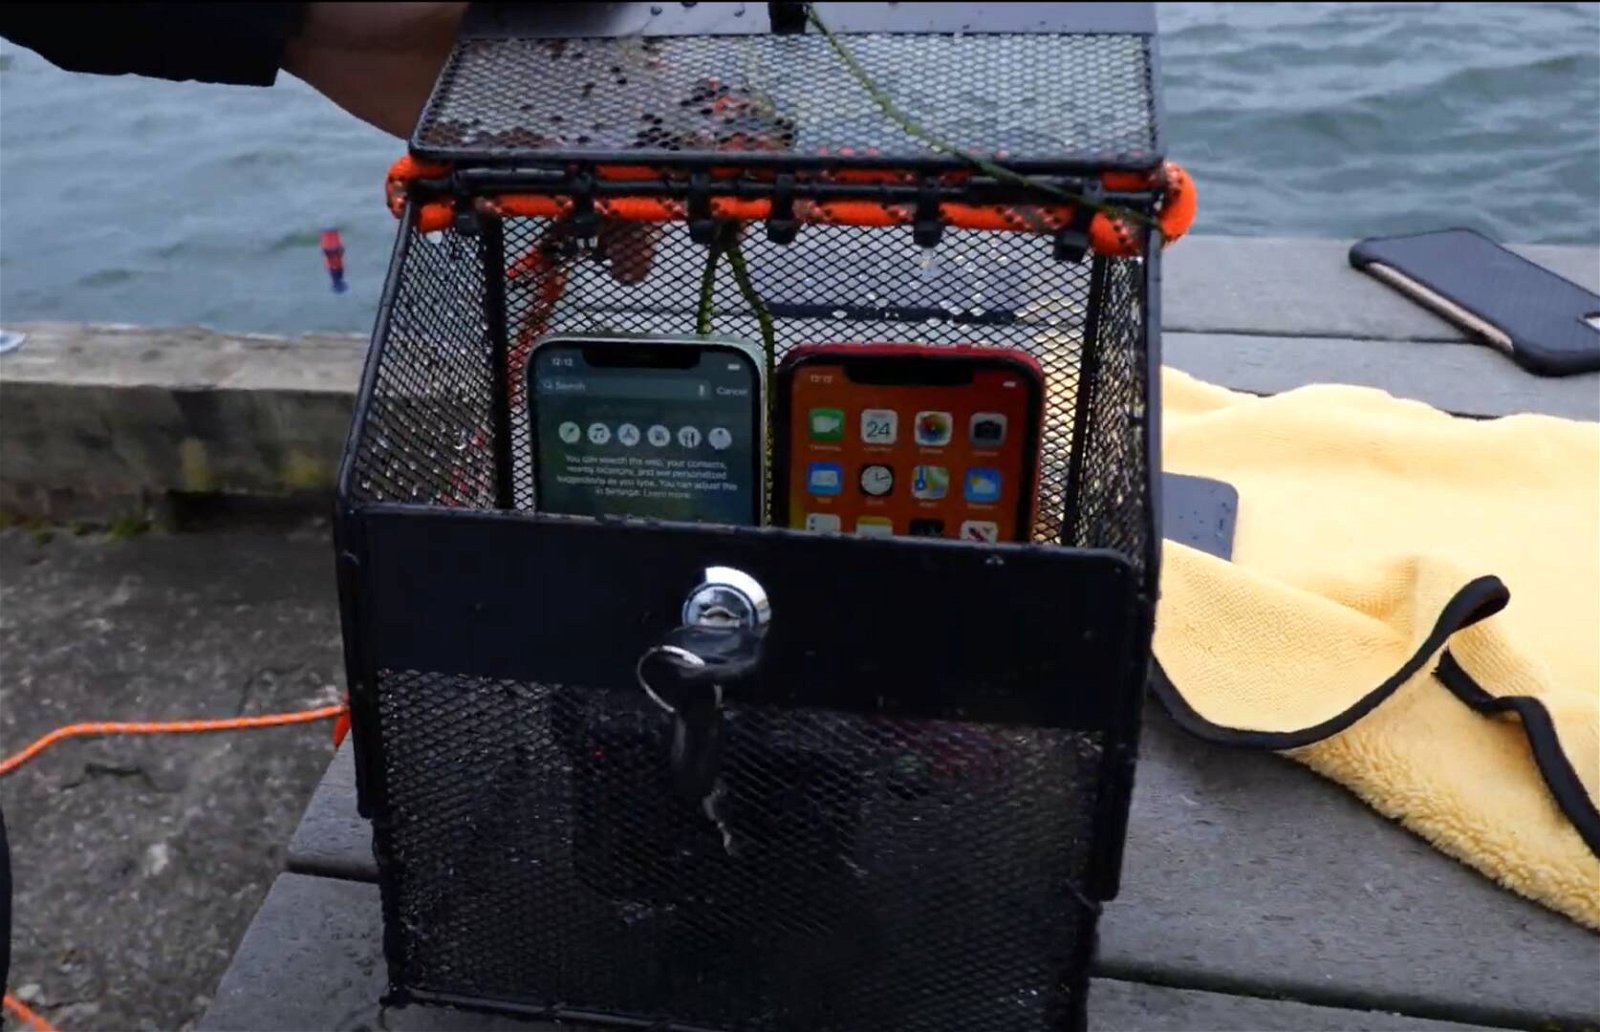 Immagine di iPhone 12: in mare 21 minuti ad oltre 9 metri di profondità, avrà resistito?